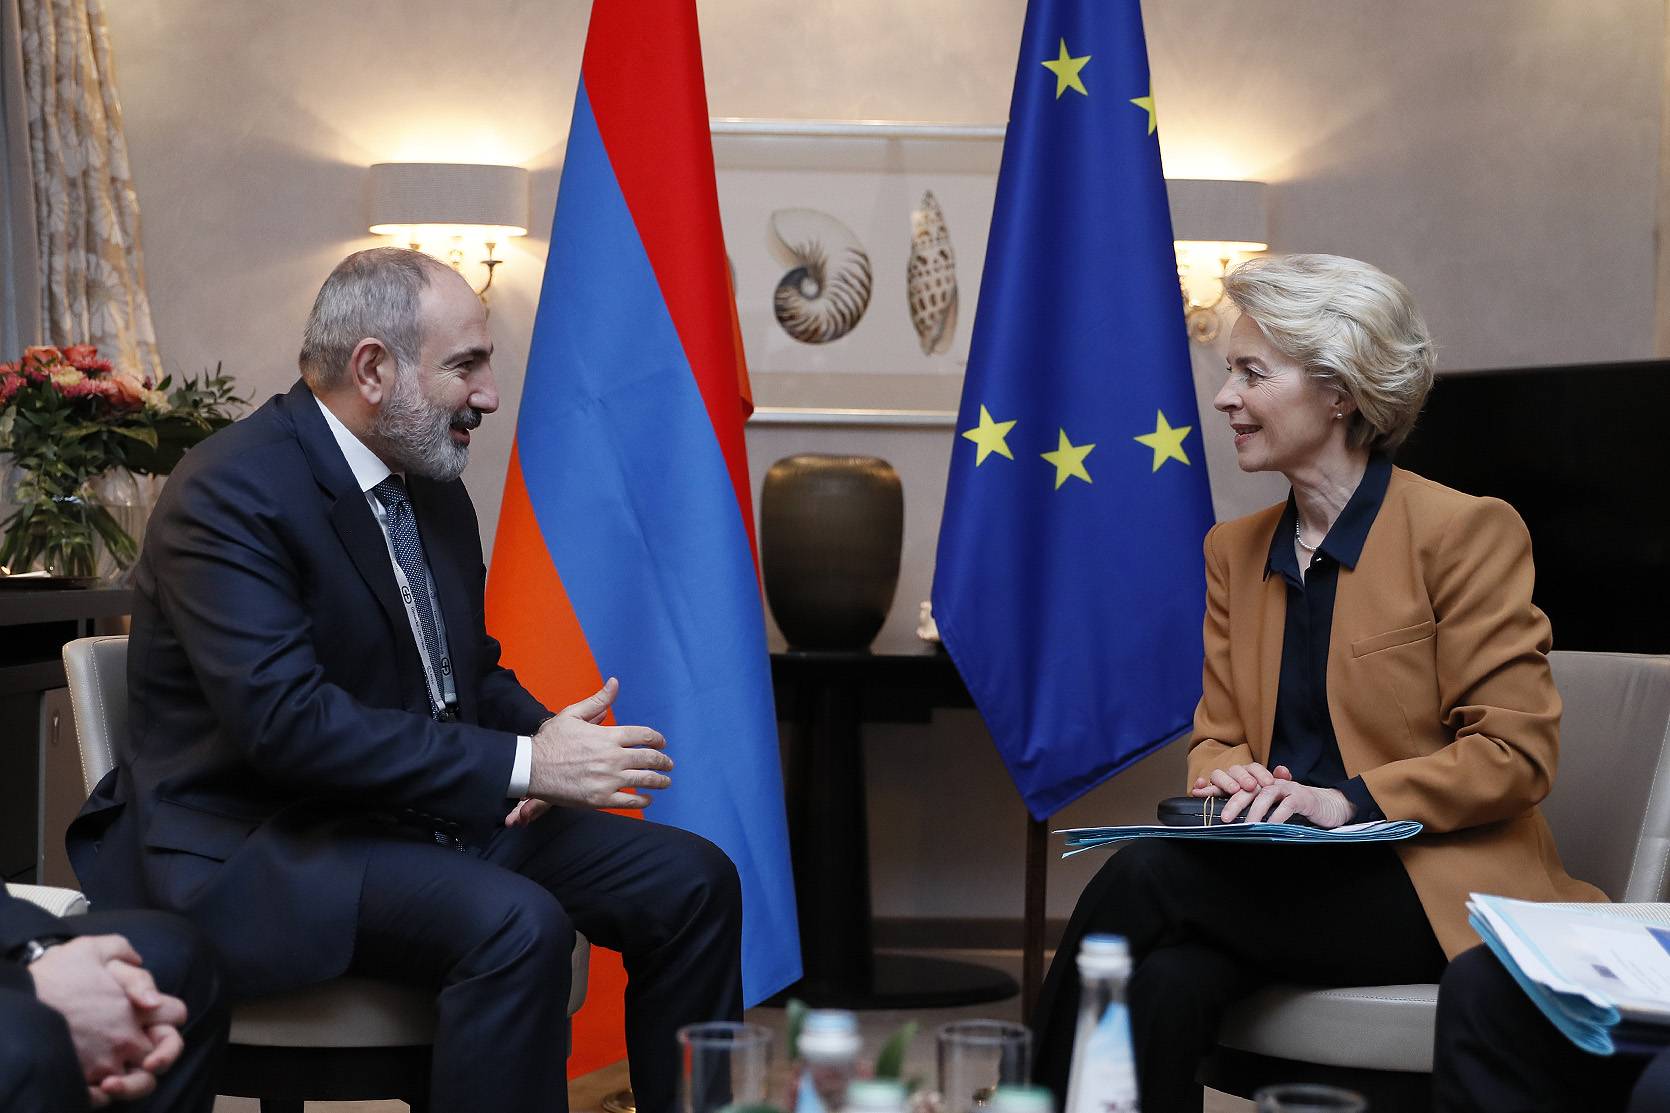 202Никол Пашинян и Урсула фон дер Ляйен обсудили вопросы сотрудничества Армения-ЕС